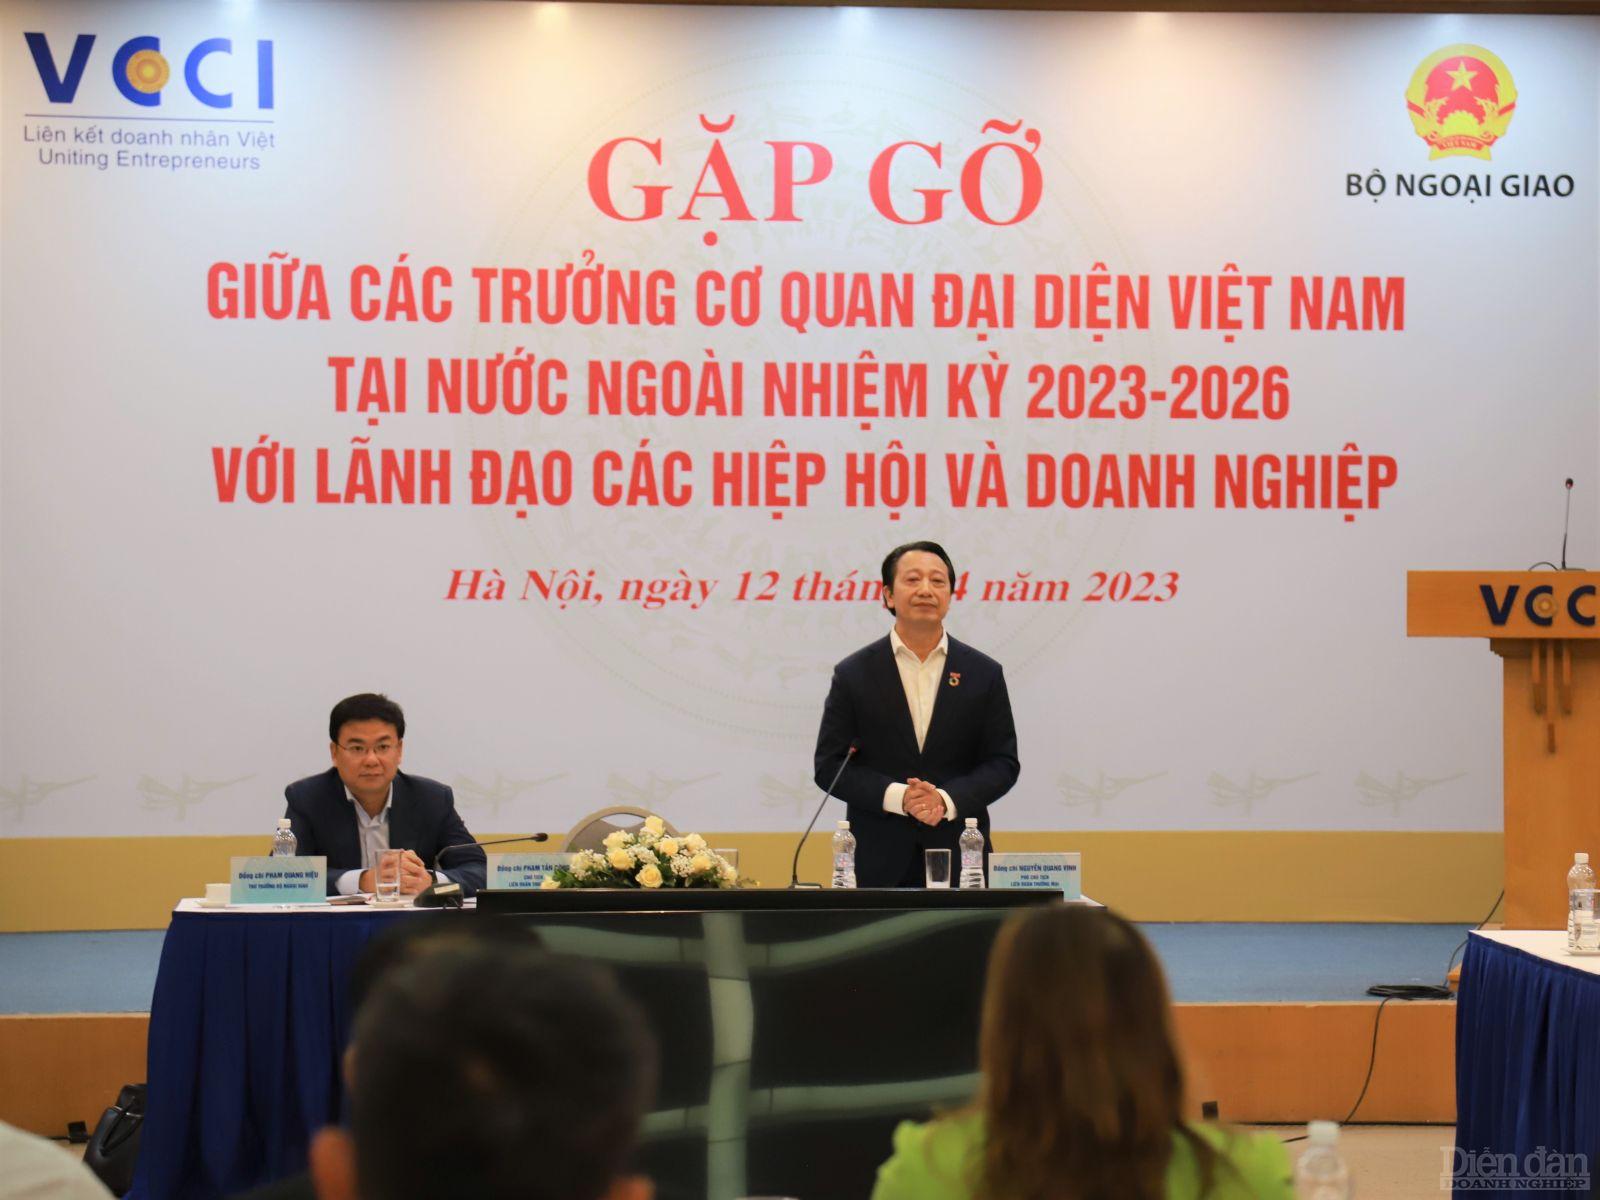 Sự kiện là dịp để các doanh nghiệp gặp gỡ, trao đổi tìm giải pháp thúc đẩy thương mại của Việt Nam ra thế giới (Ảnh: Trường Đặng)